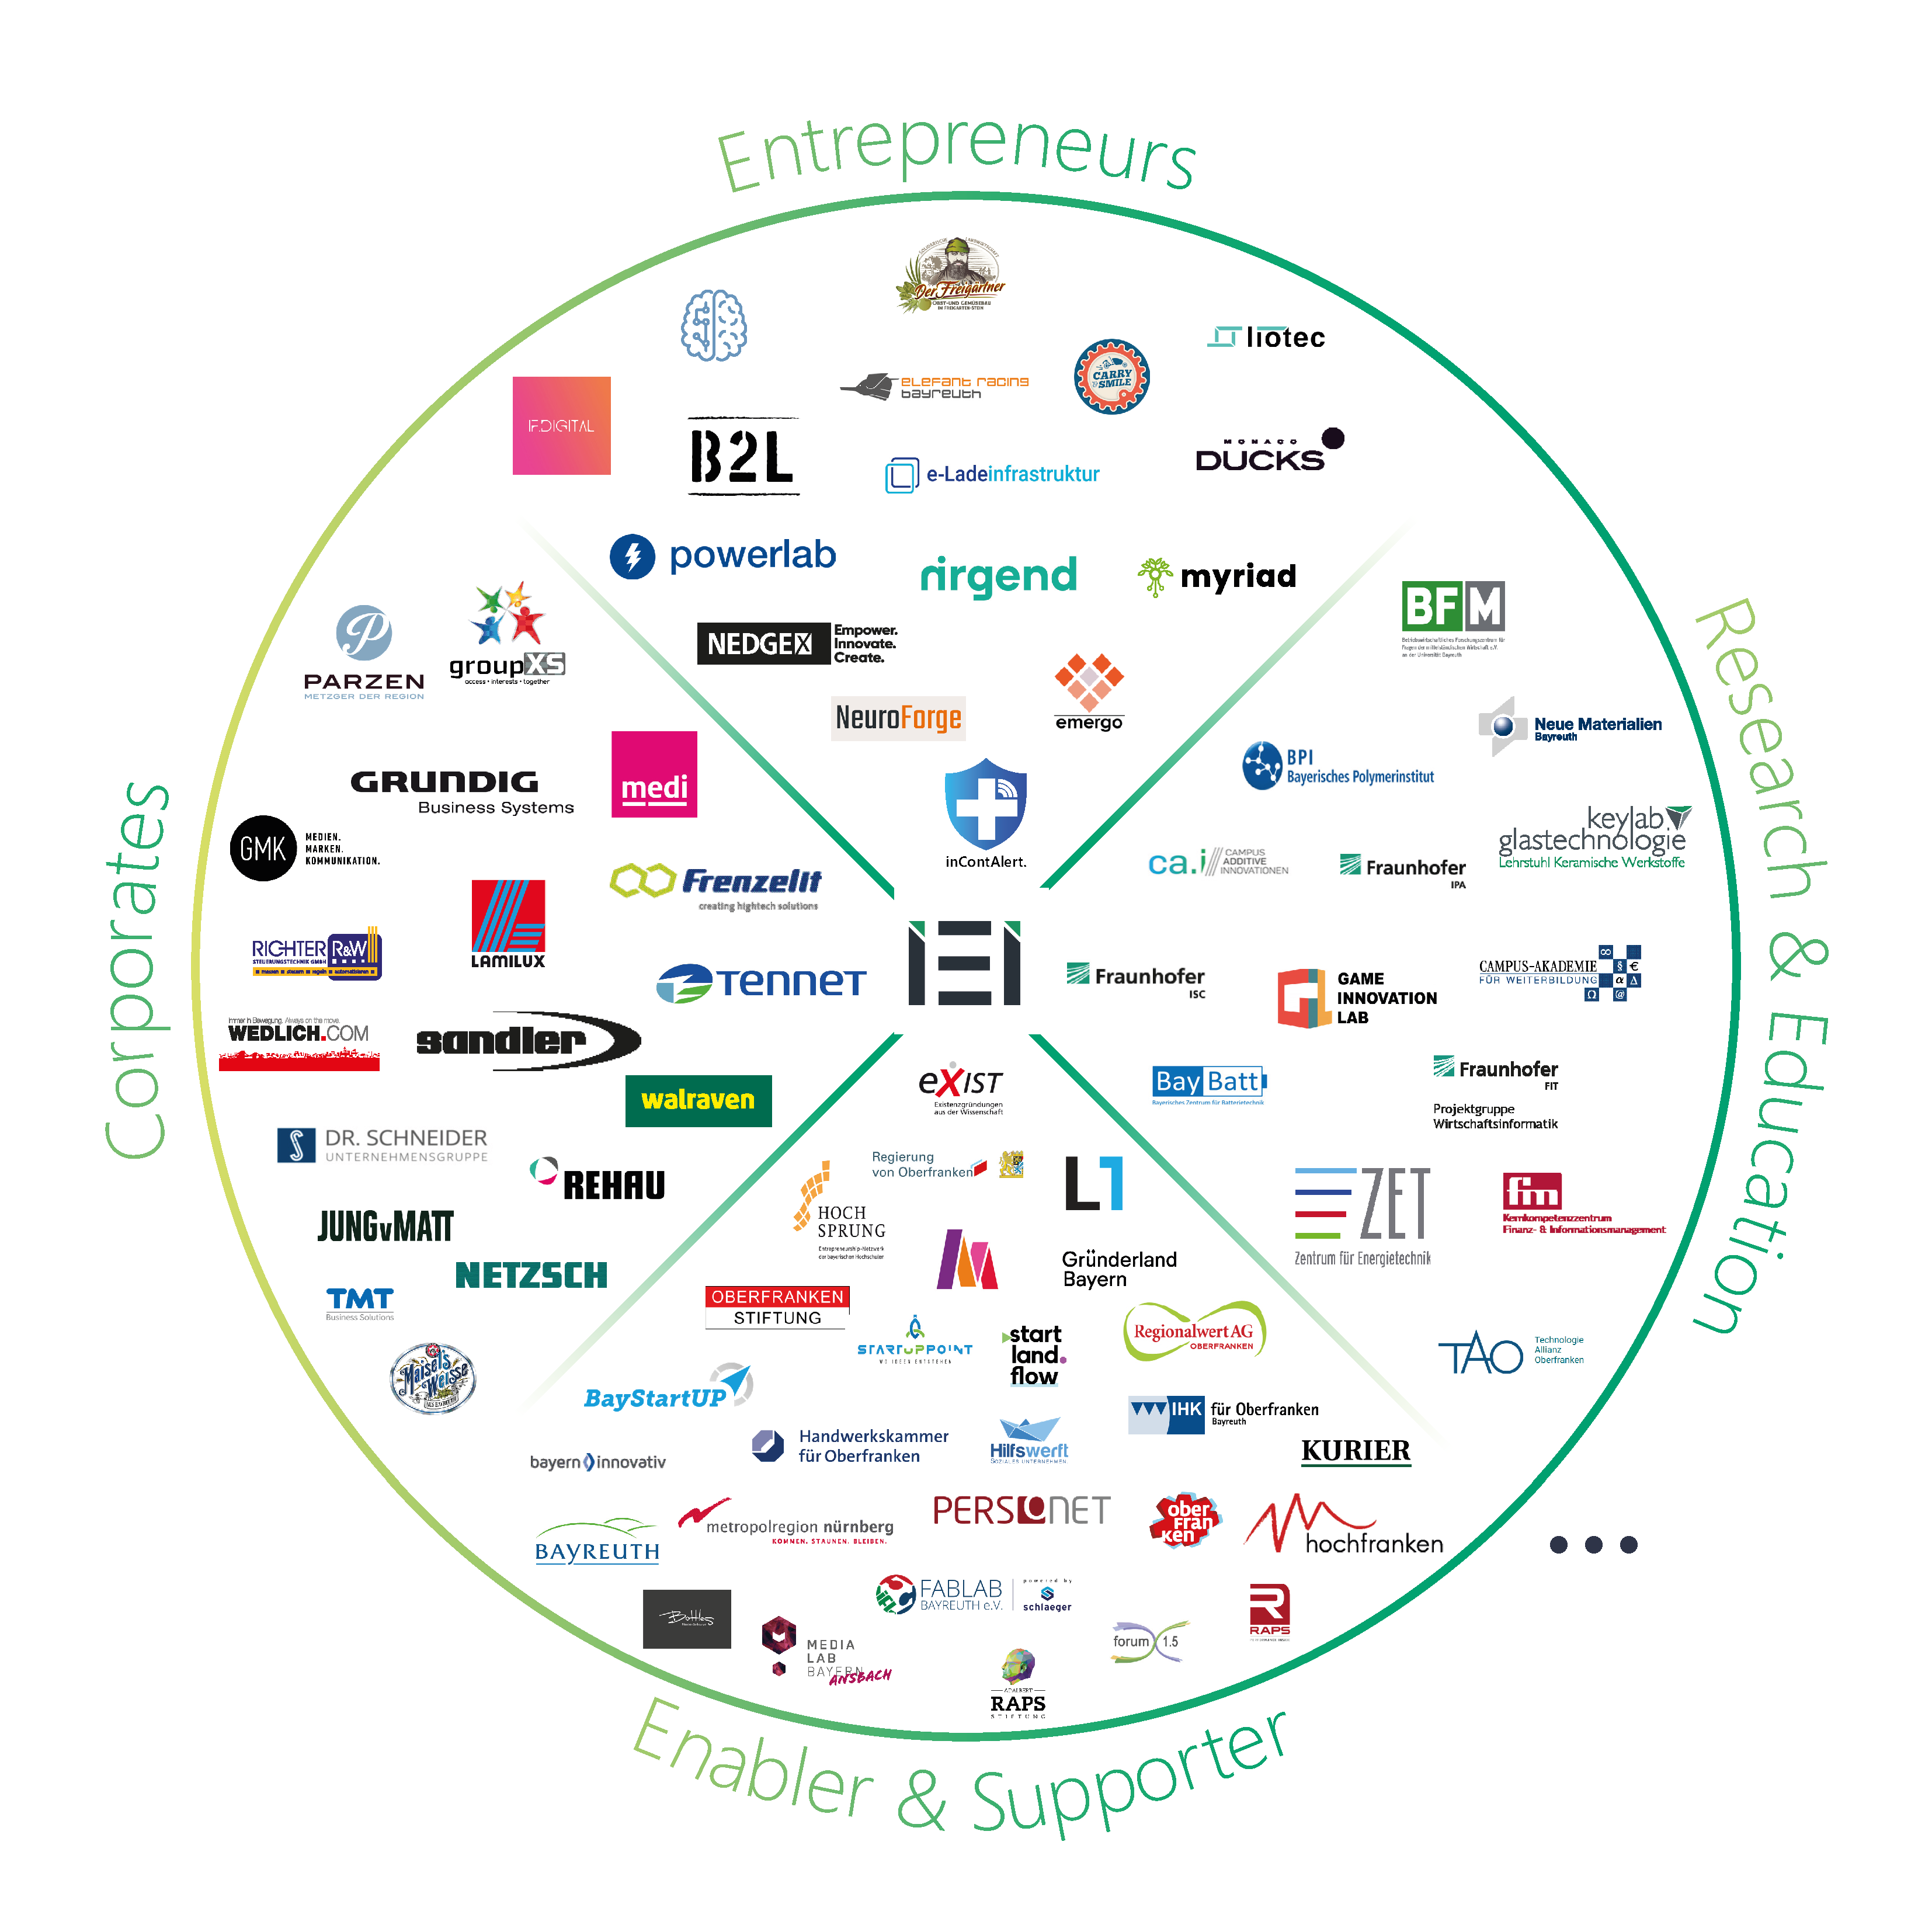 Grafik: Das Institut für Entrepreneurship & Innovation steht zentral in der Mitte. Darumherum sind Logos zu sehen, die den folgenden vier Kategorien zugeordet sind: Entrepreneurs, Research & Education, Enablers & Supporters, Corporates.